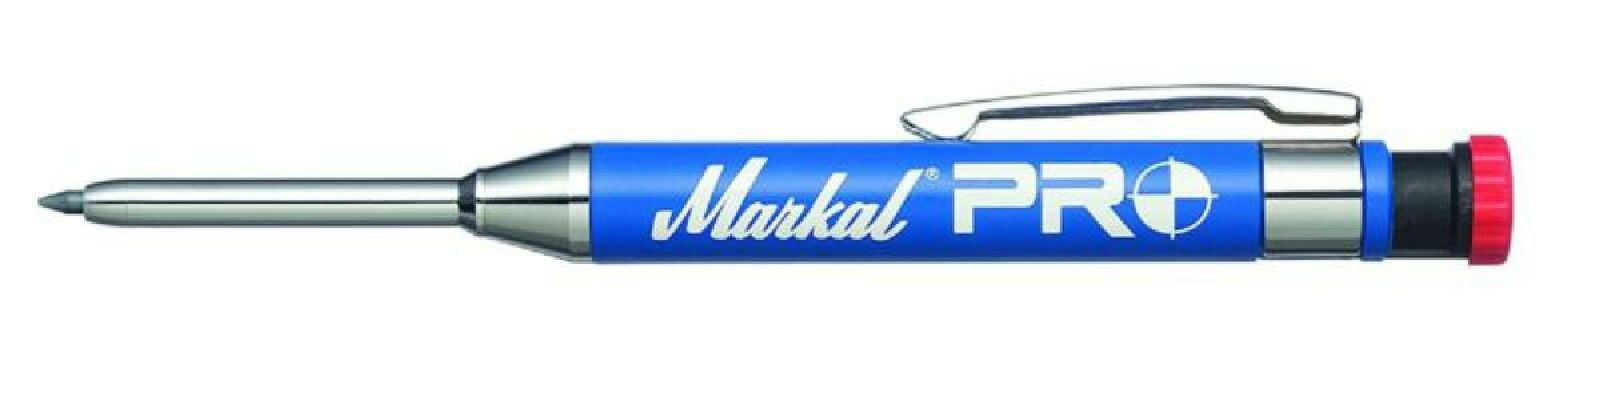 Markal 96270 Pro Holder & Starter Lead Blue